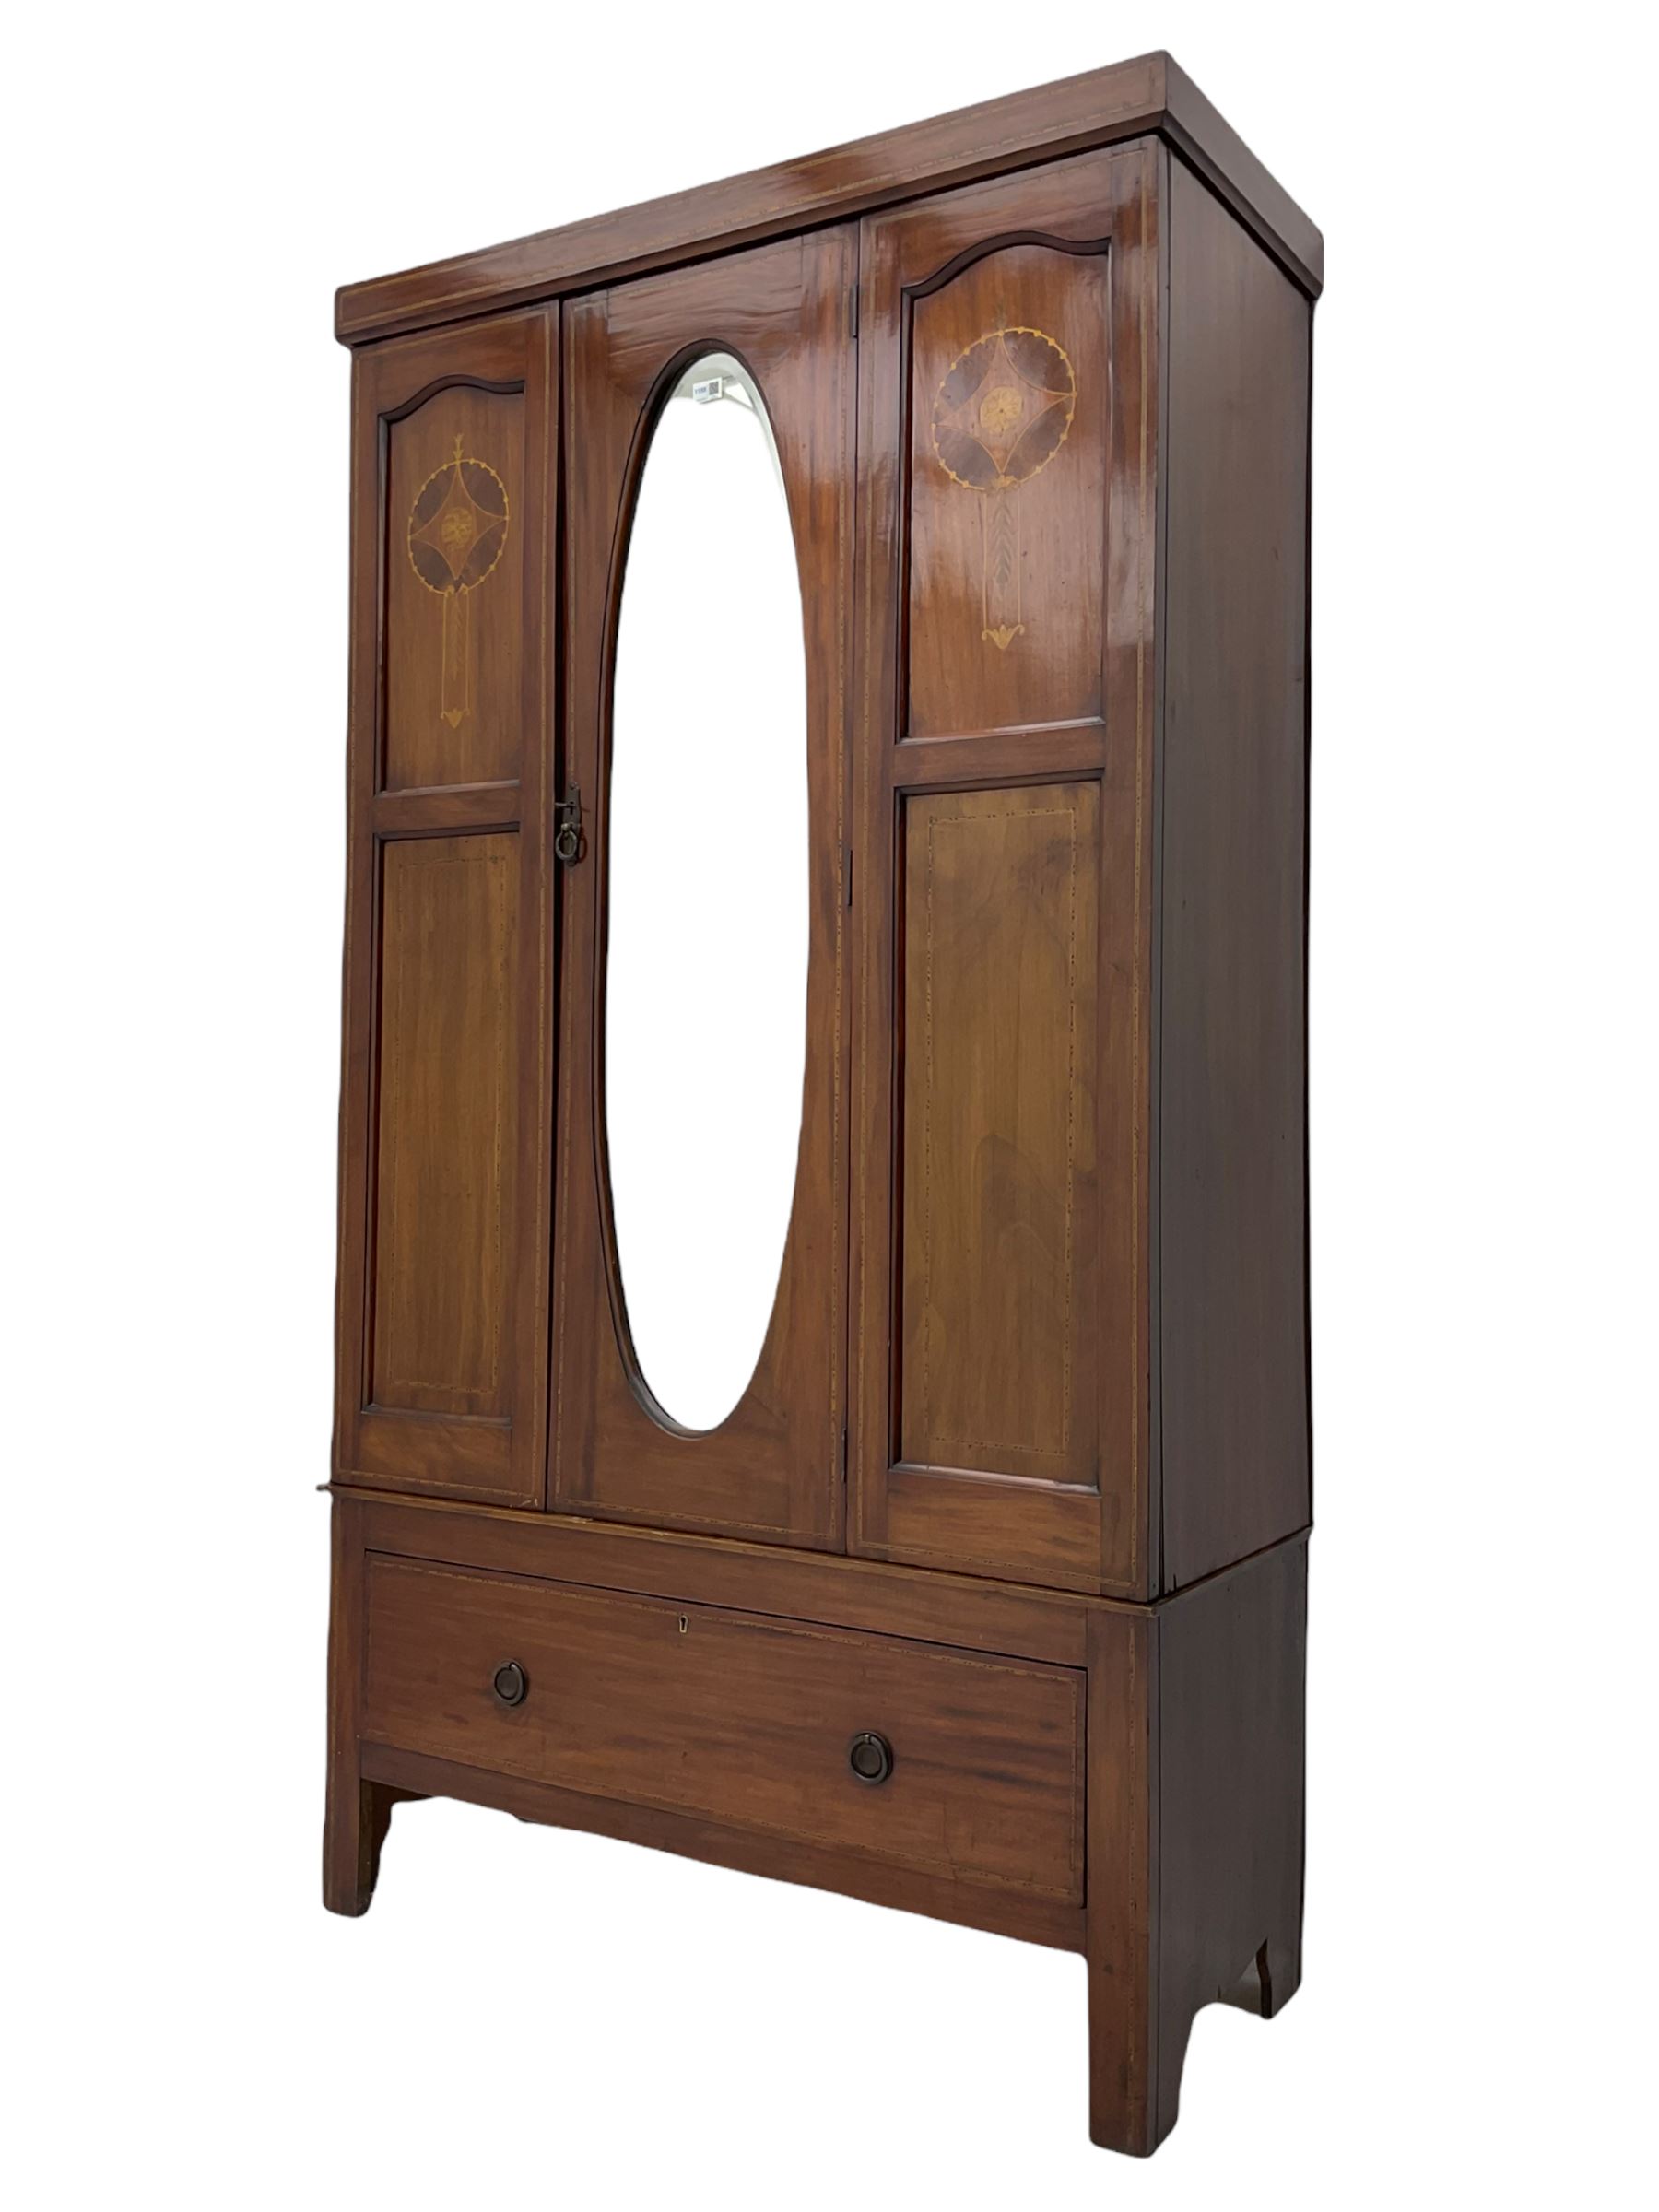 Edwardian inlaid mahogany wardrobe - Image 2 of 8